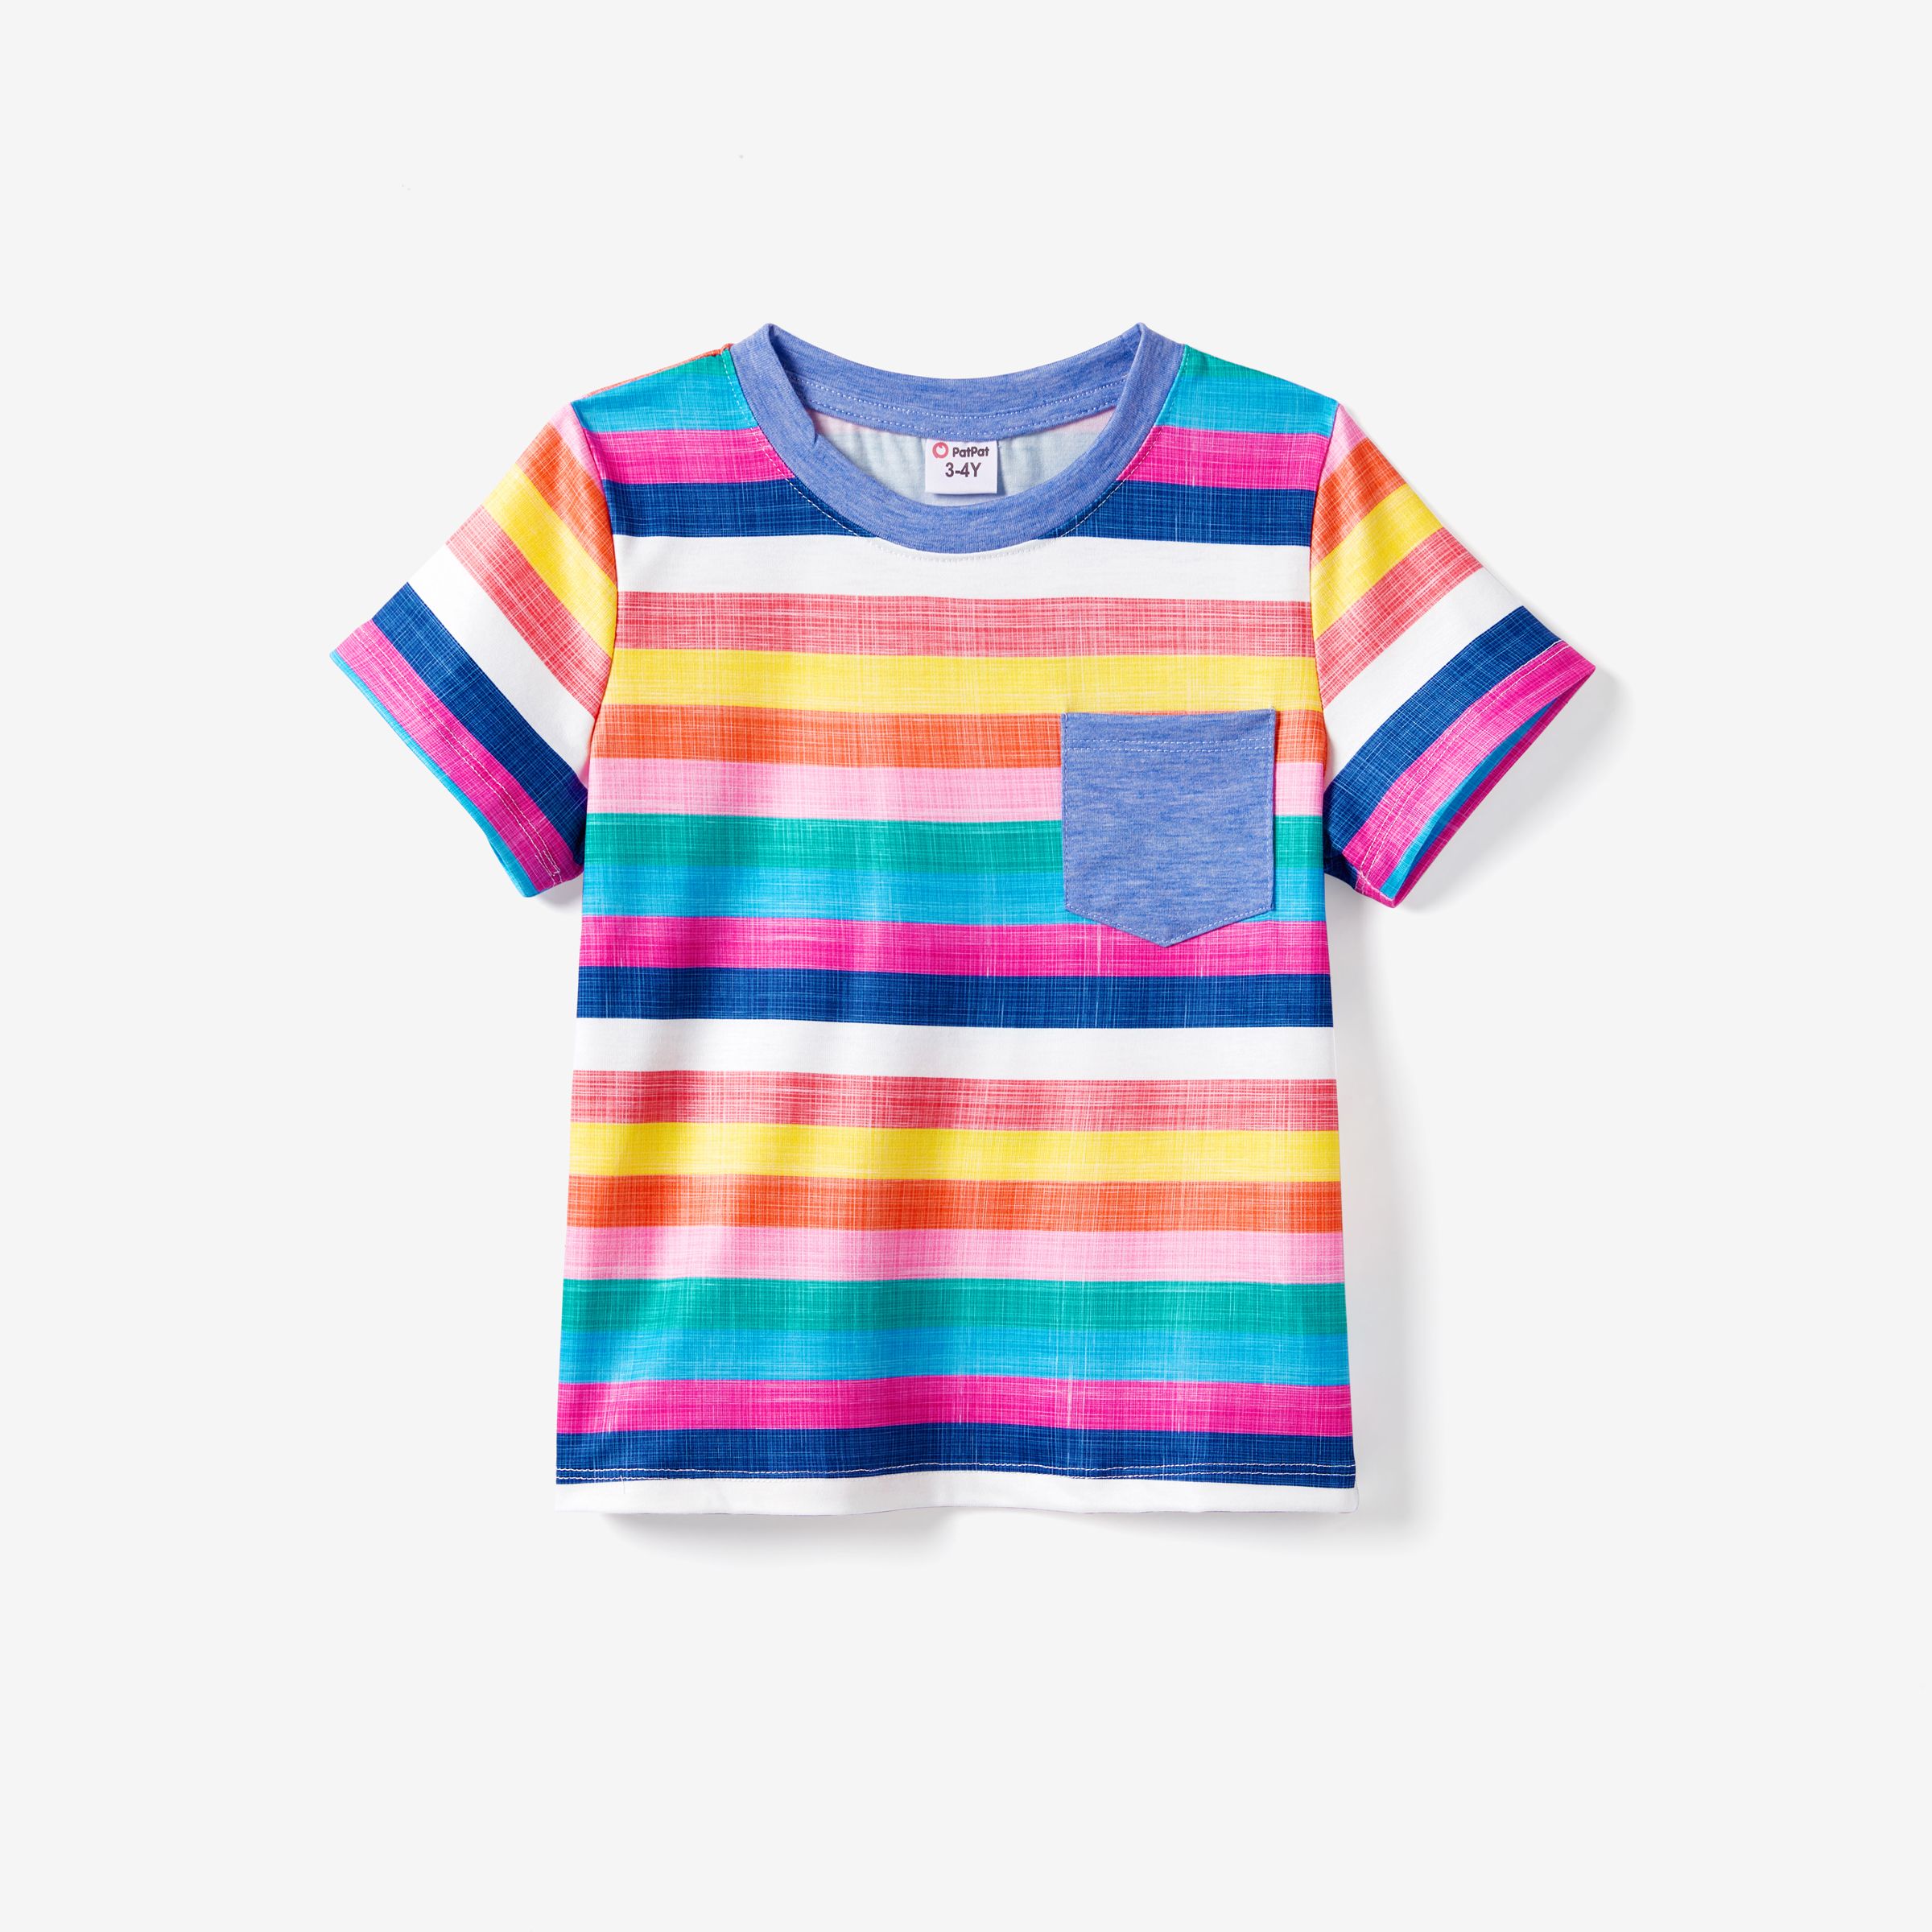 Famille Assortie Multicolore Stripe T-shirt Et Volants Ourlet Bouton Bretelle Robe Ensembles